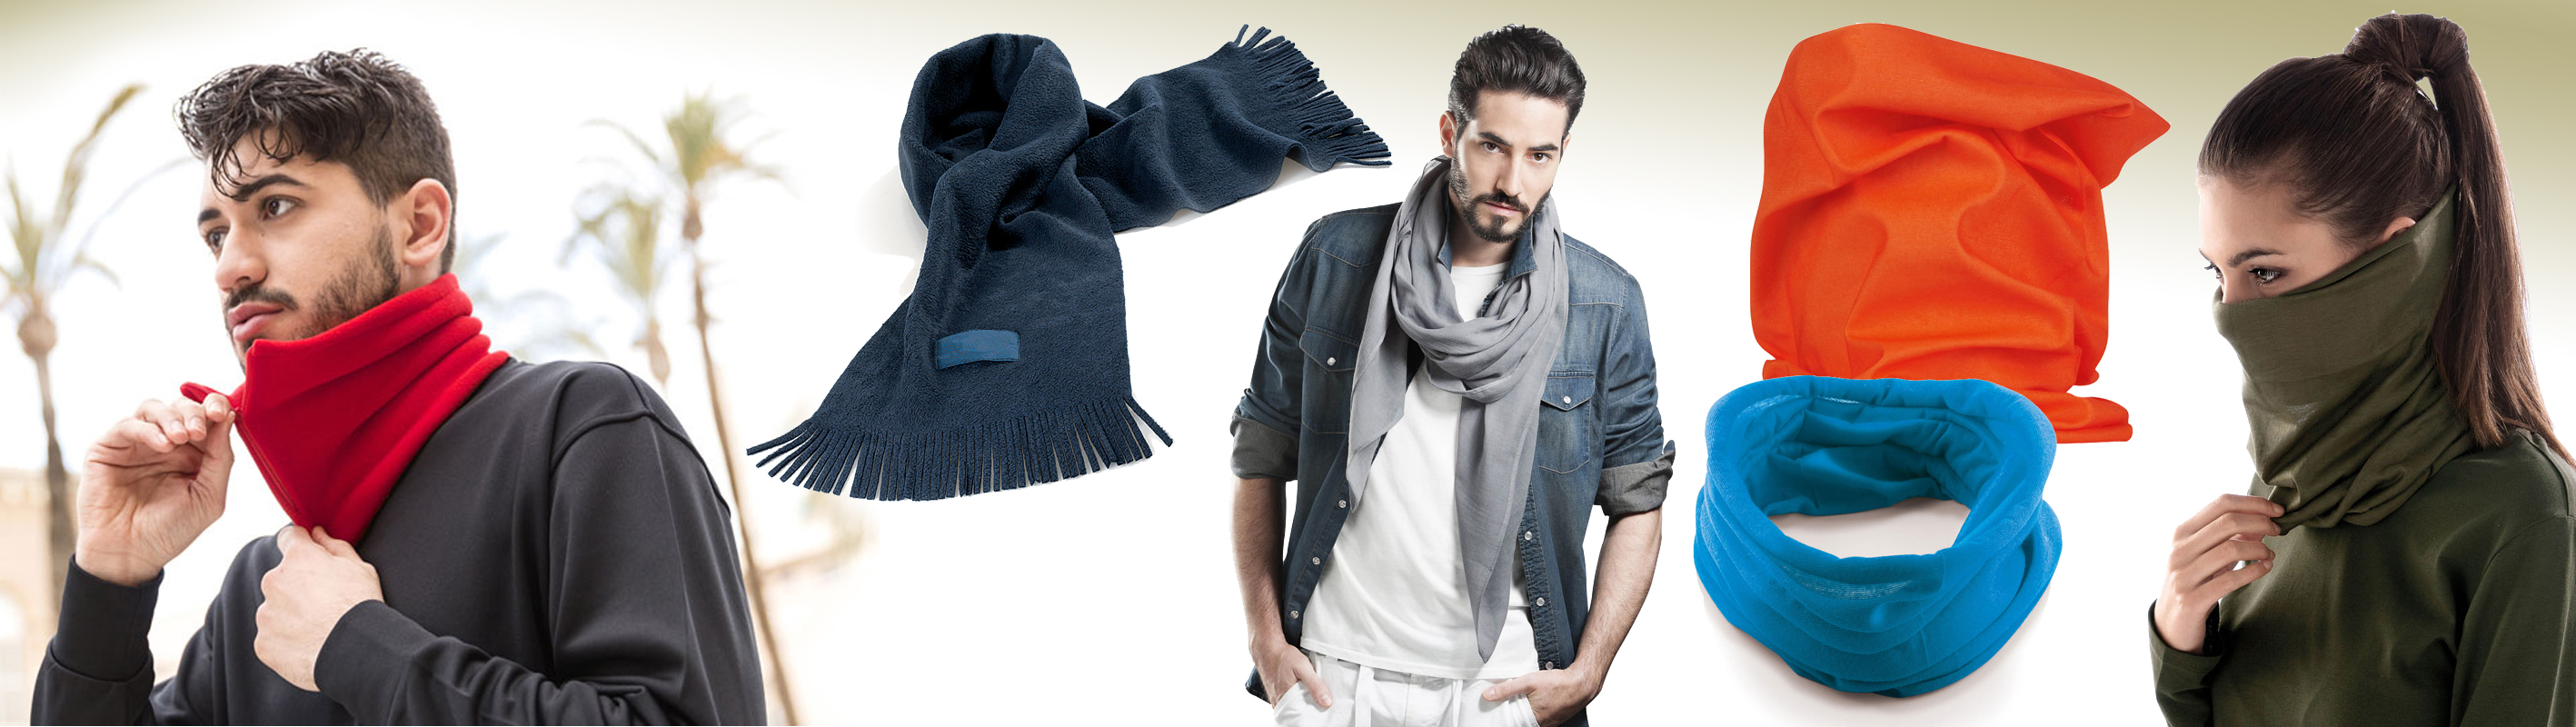 Sciarpe, scaldacollo e foulard promozionali neutre da personalizzare - Gadget Pubblicitari